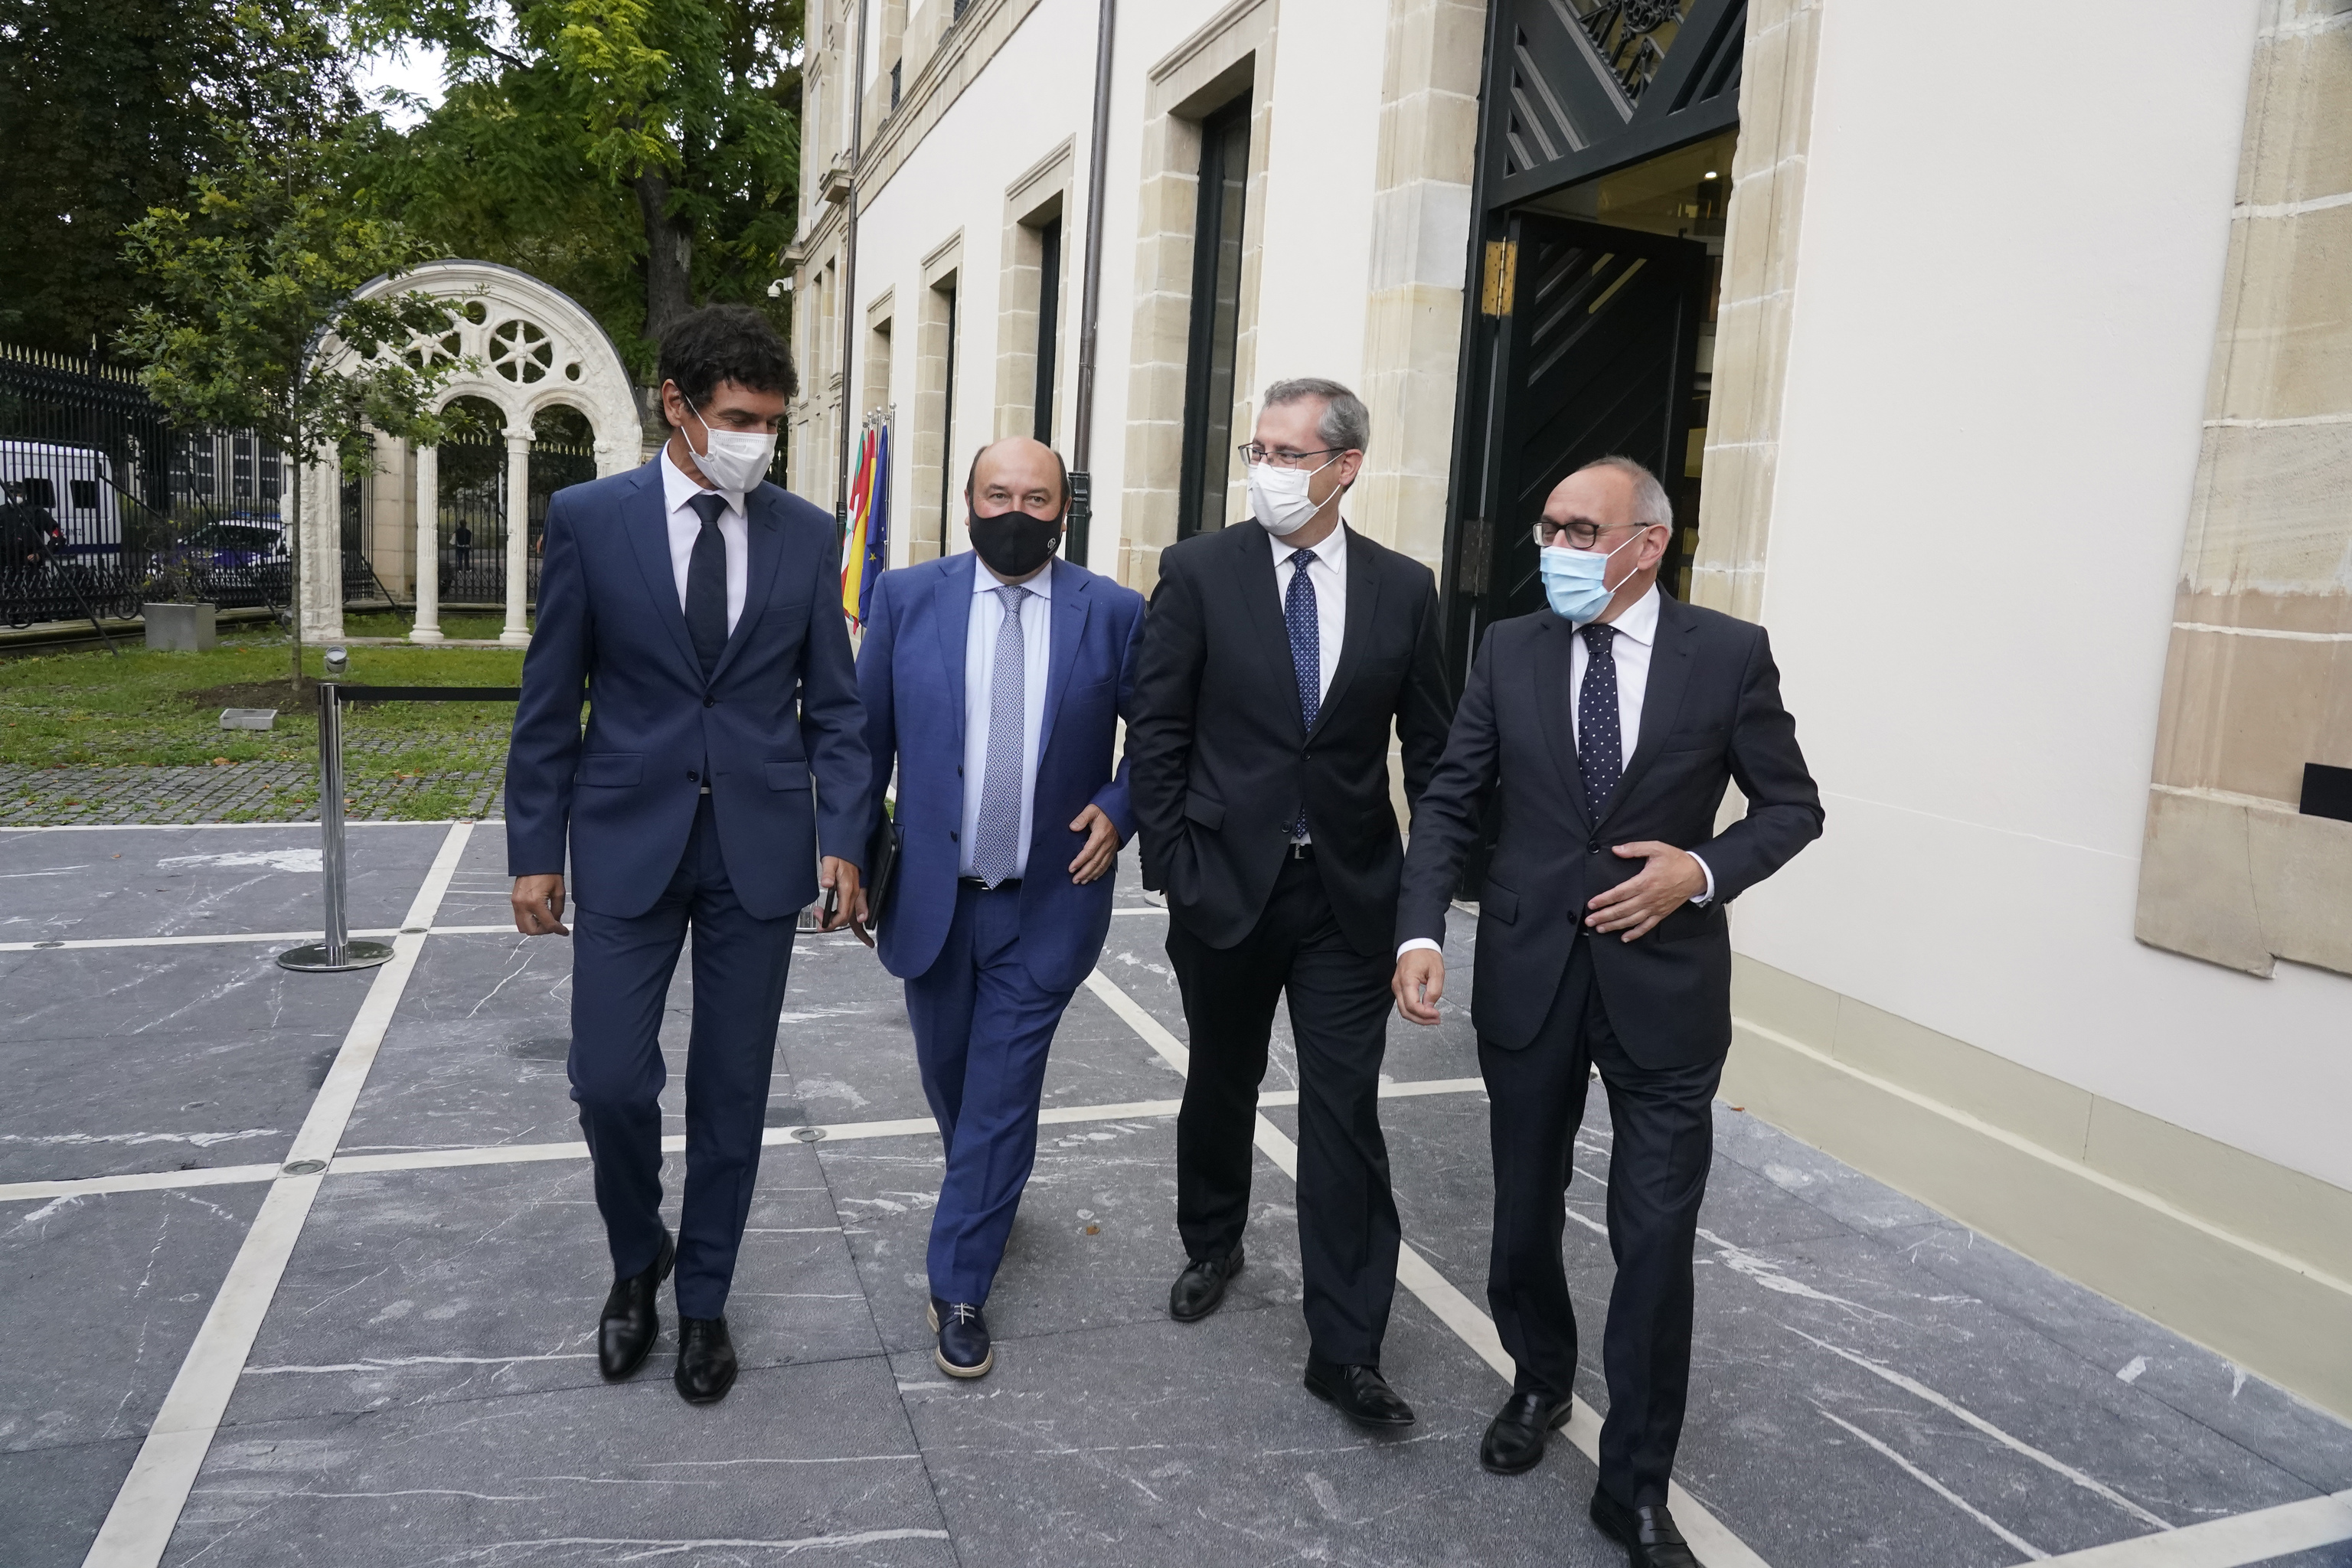 Unai Rementeria, a la izquierda de la imagen, junto a Ortuzar, Olano y Gonzlez abandonan juntos el Parlamento Vasco en septiembre de 2021.